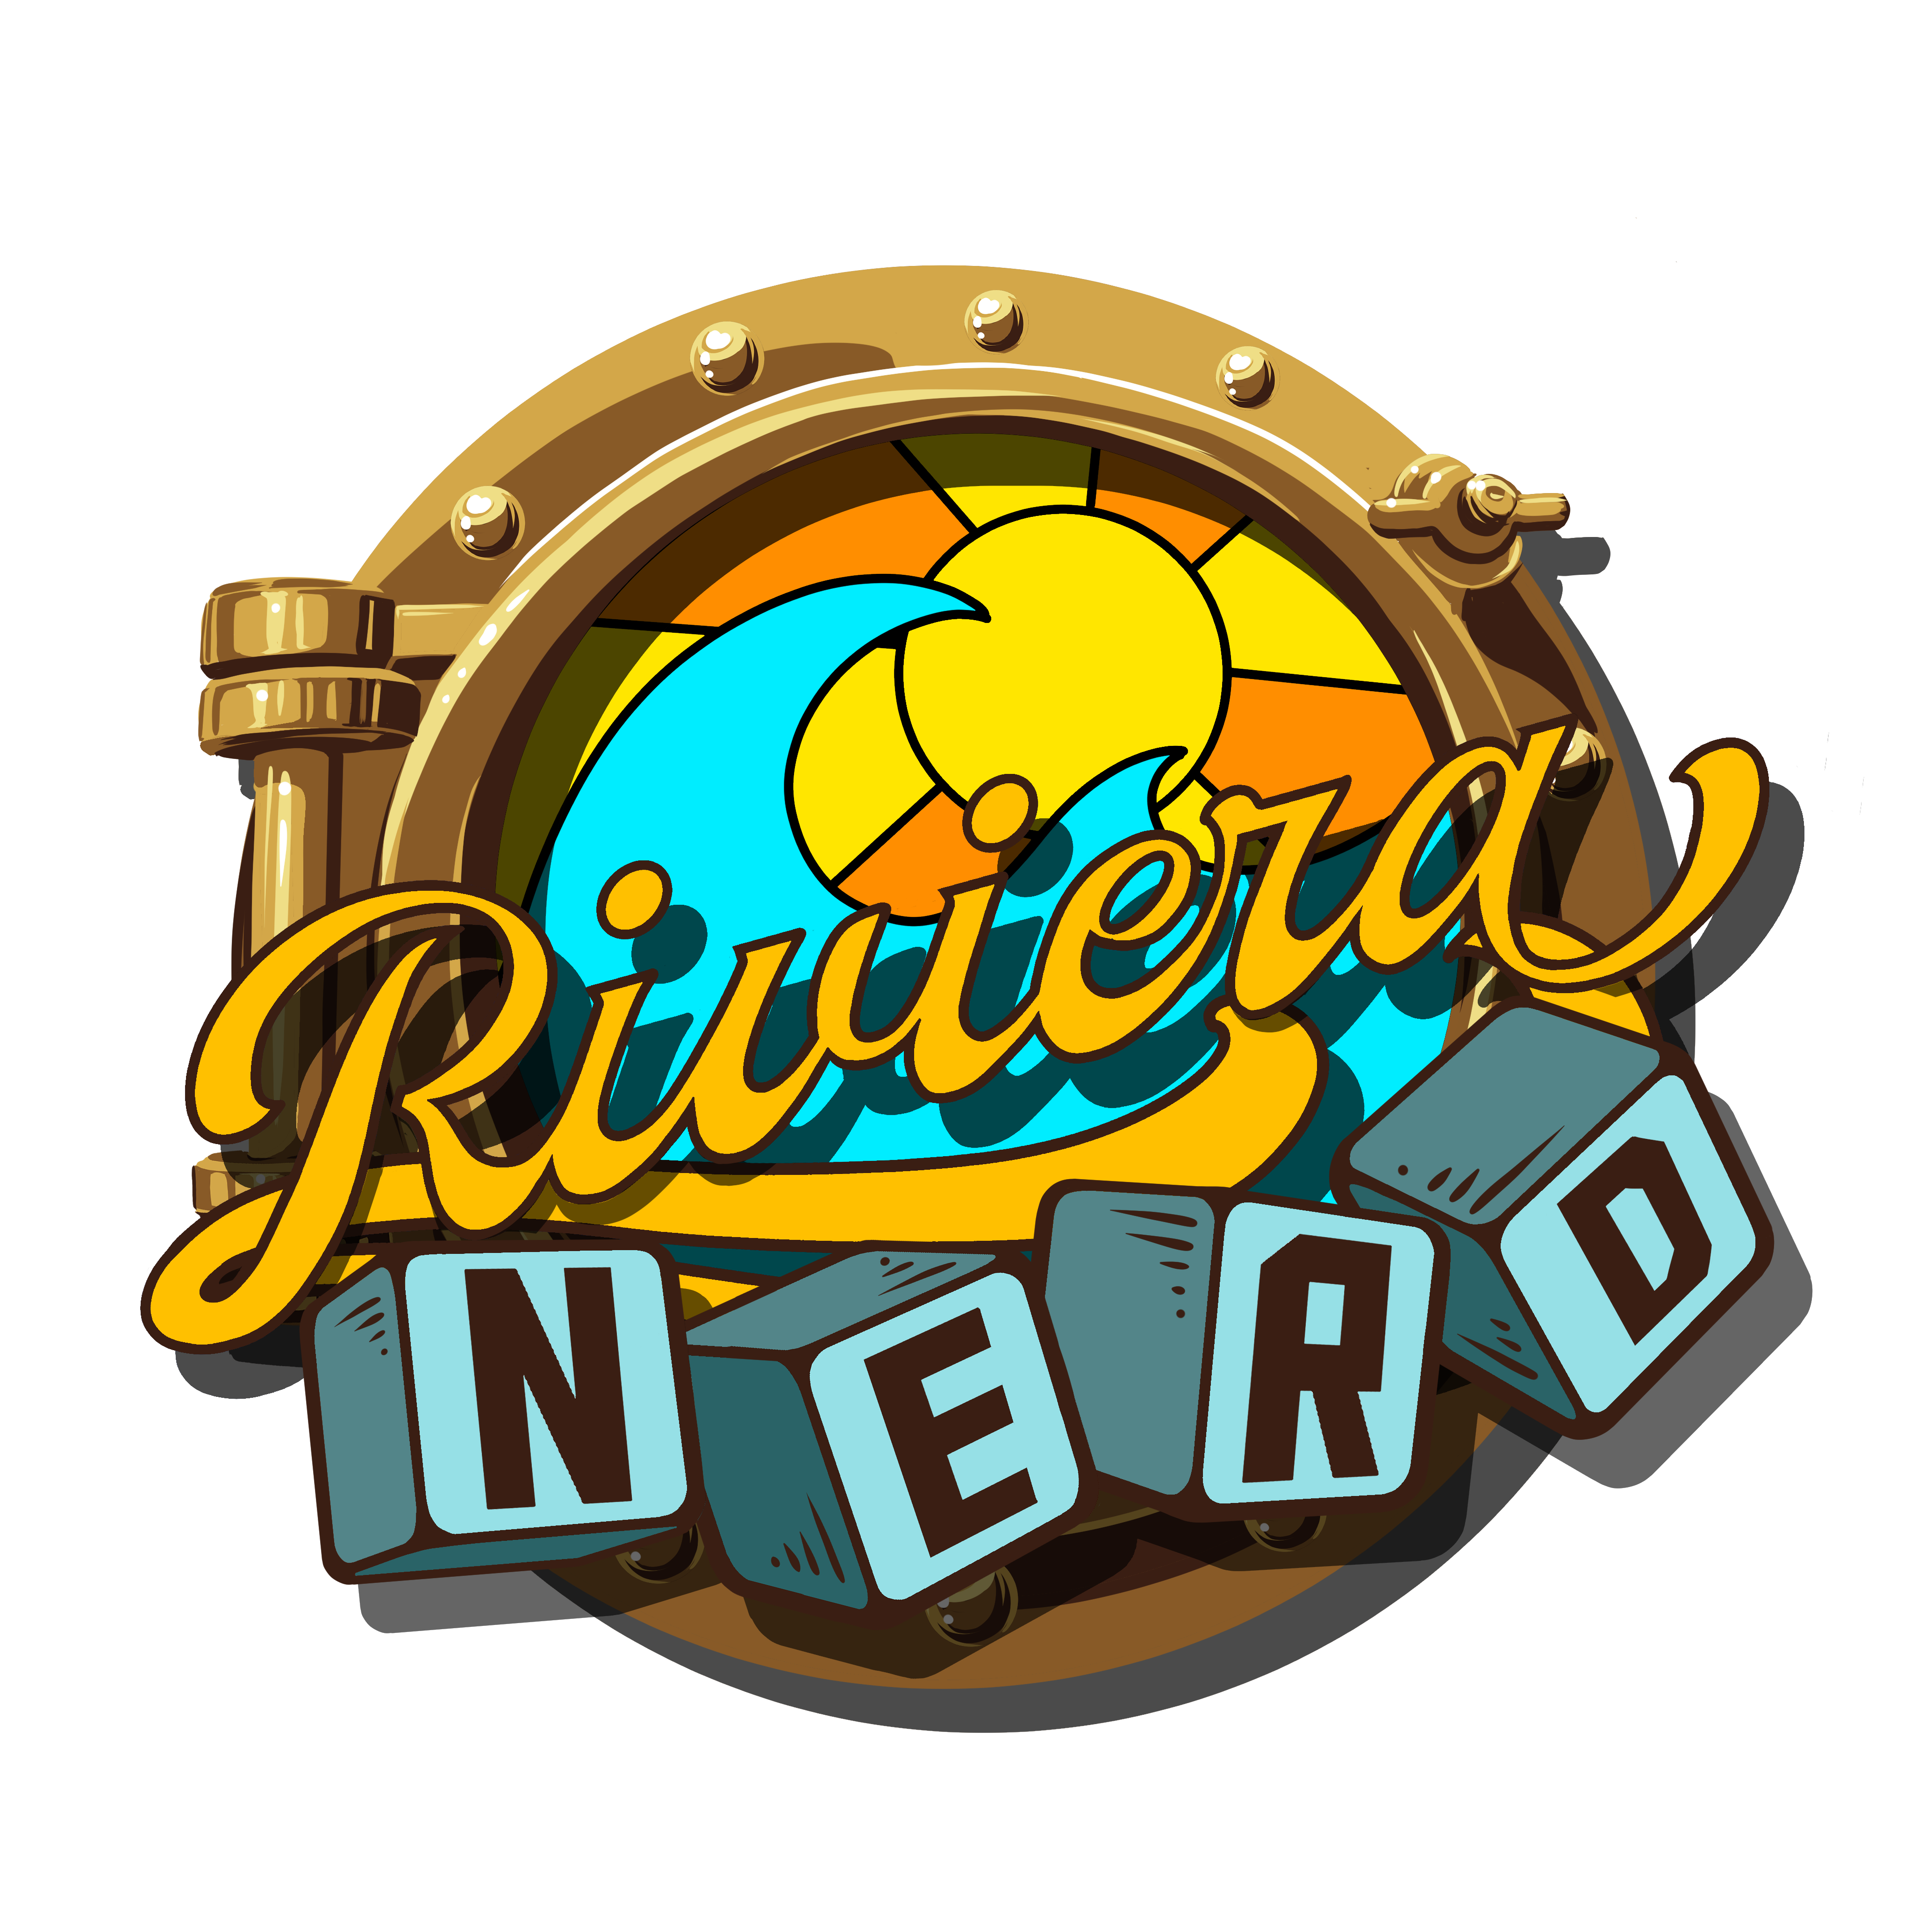 Intrattenimento, gioco e divertimento garantiti con Riviera Nerd. Presentazione ufficiale venerdì sera a San Marino